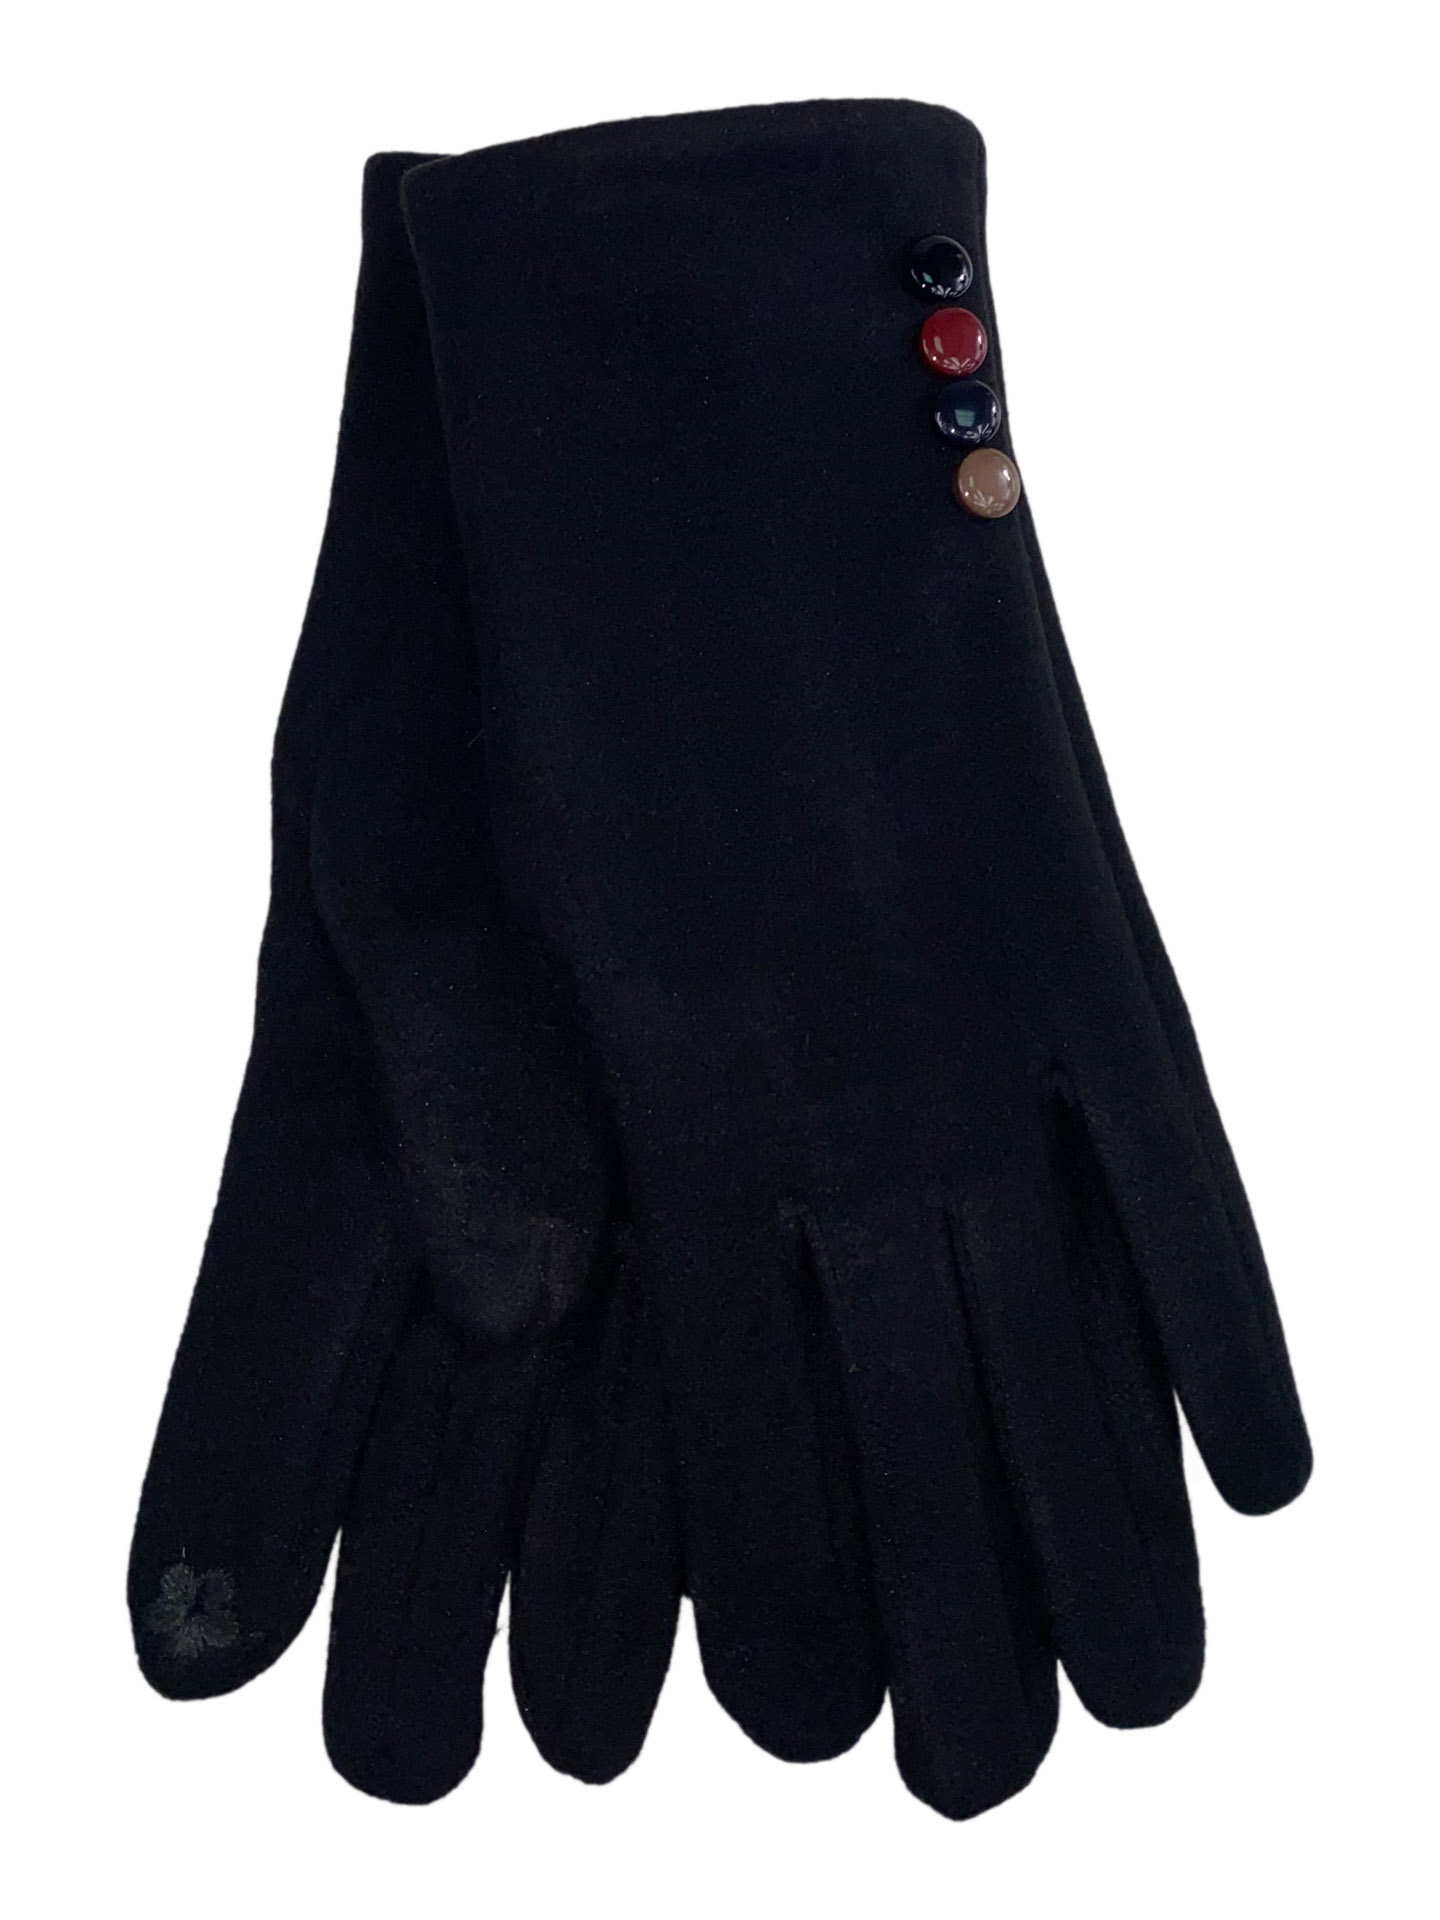 Женские утеплённые перчатки из велюра с декором, цвет чёрный